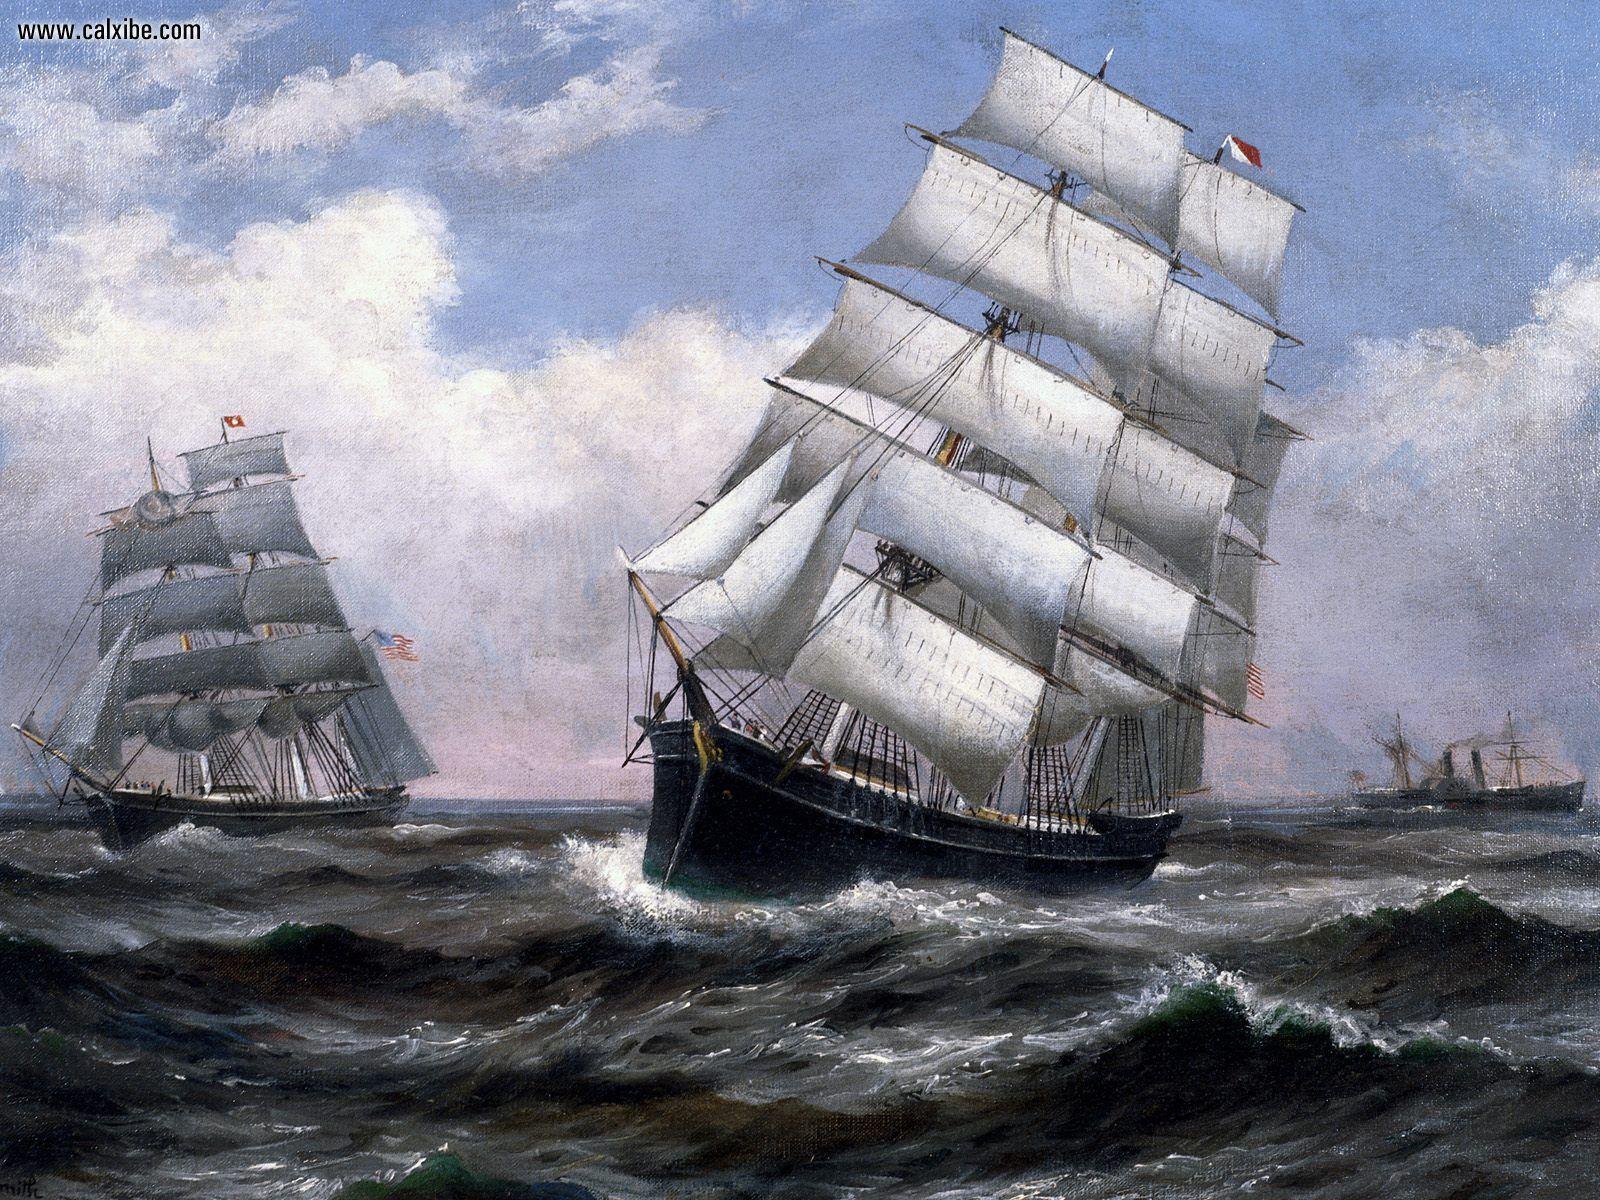 tall ship wallpaper. Sailing ships. Ships and Sailing